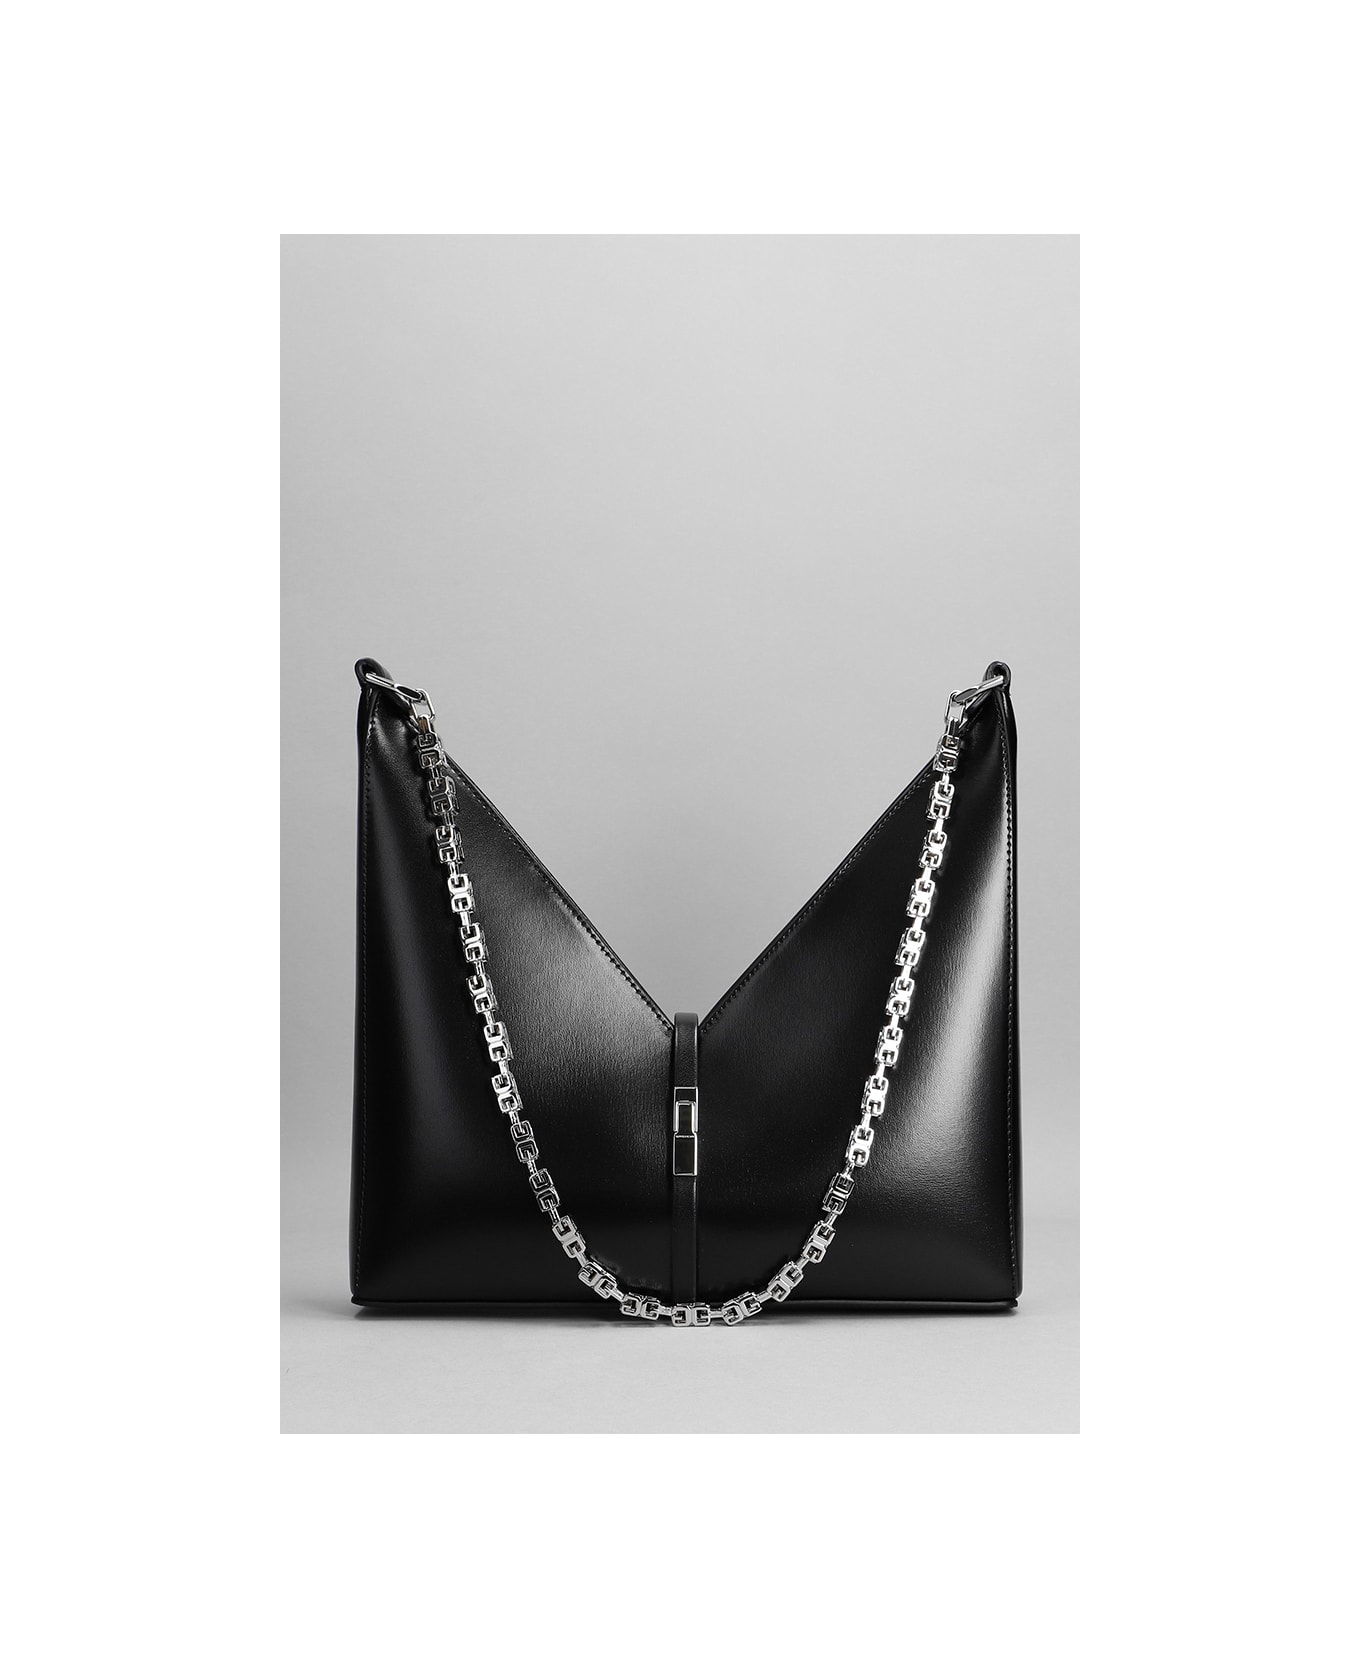 Givenchy Cut Out Shoulder Bag In Black Leather - black